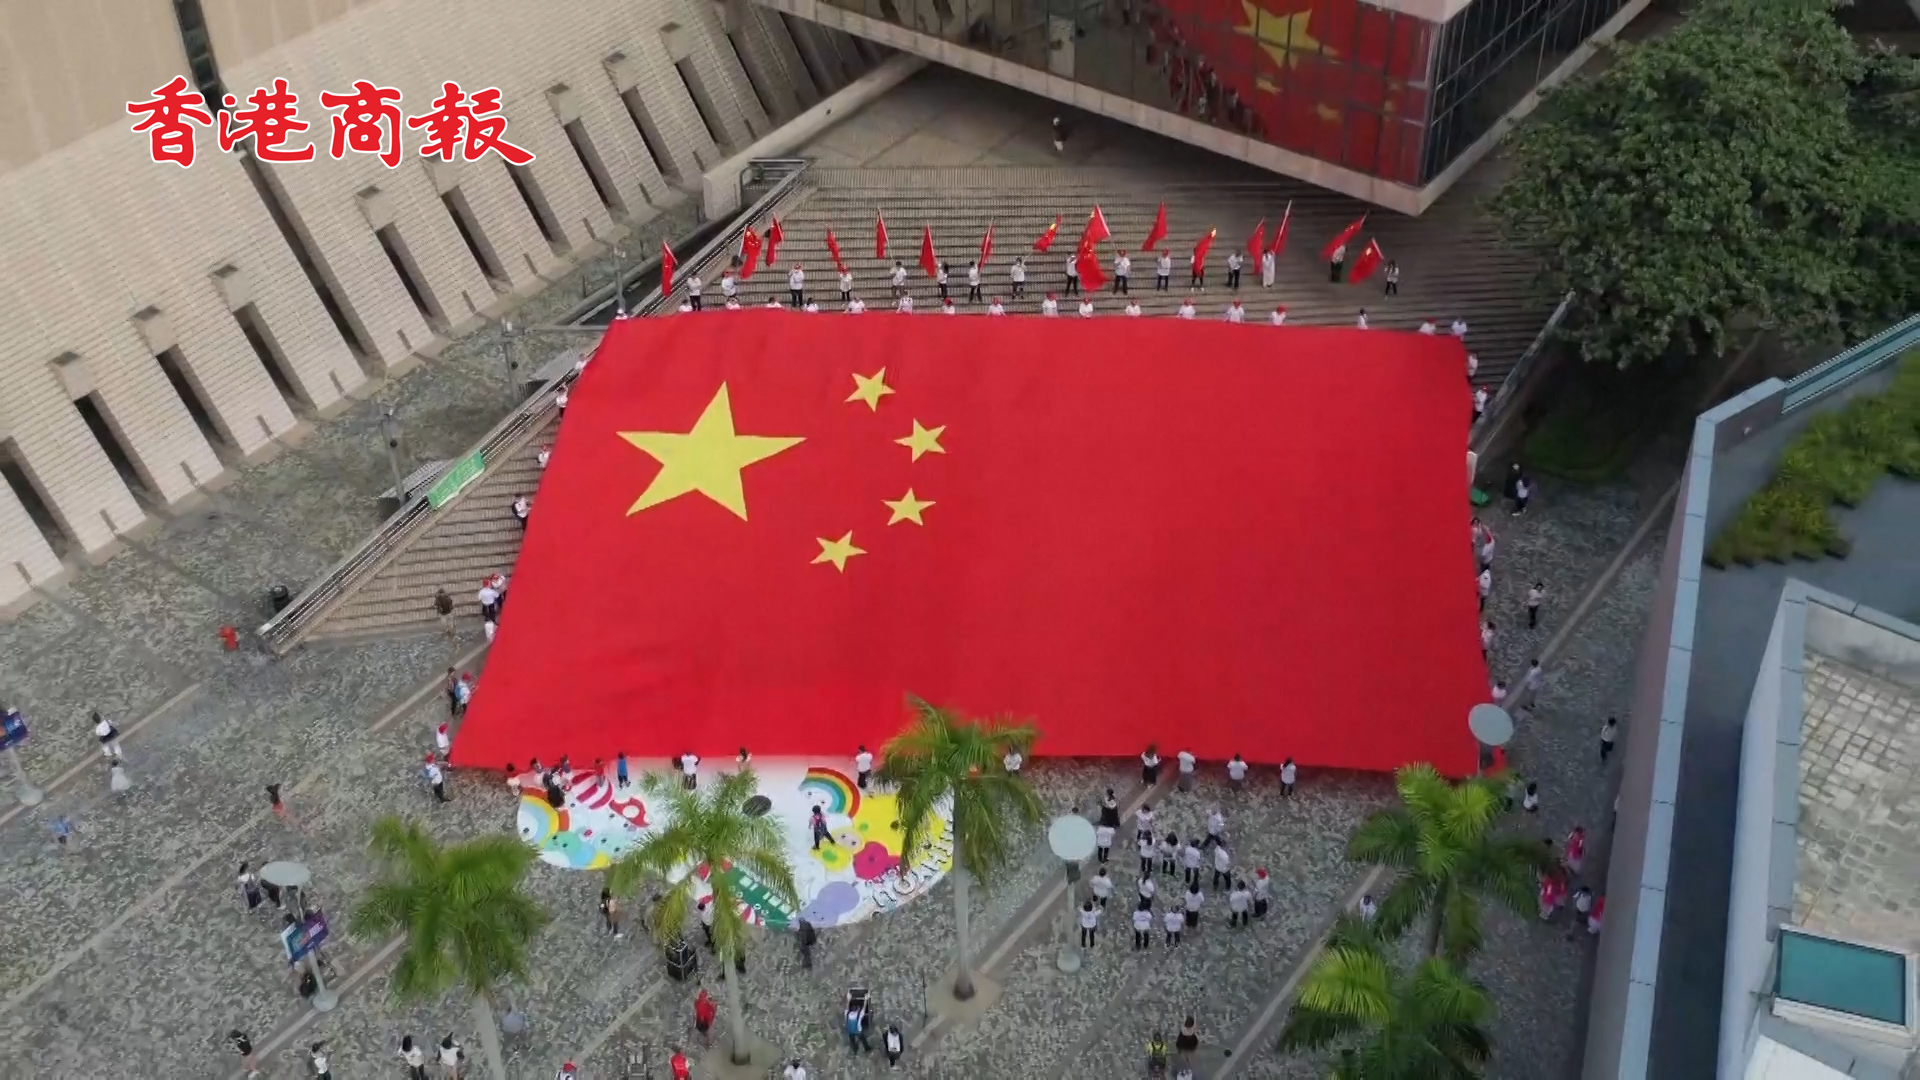 有片丨「十一」的香港 最耀眼的顏色當屬中國紅 